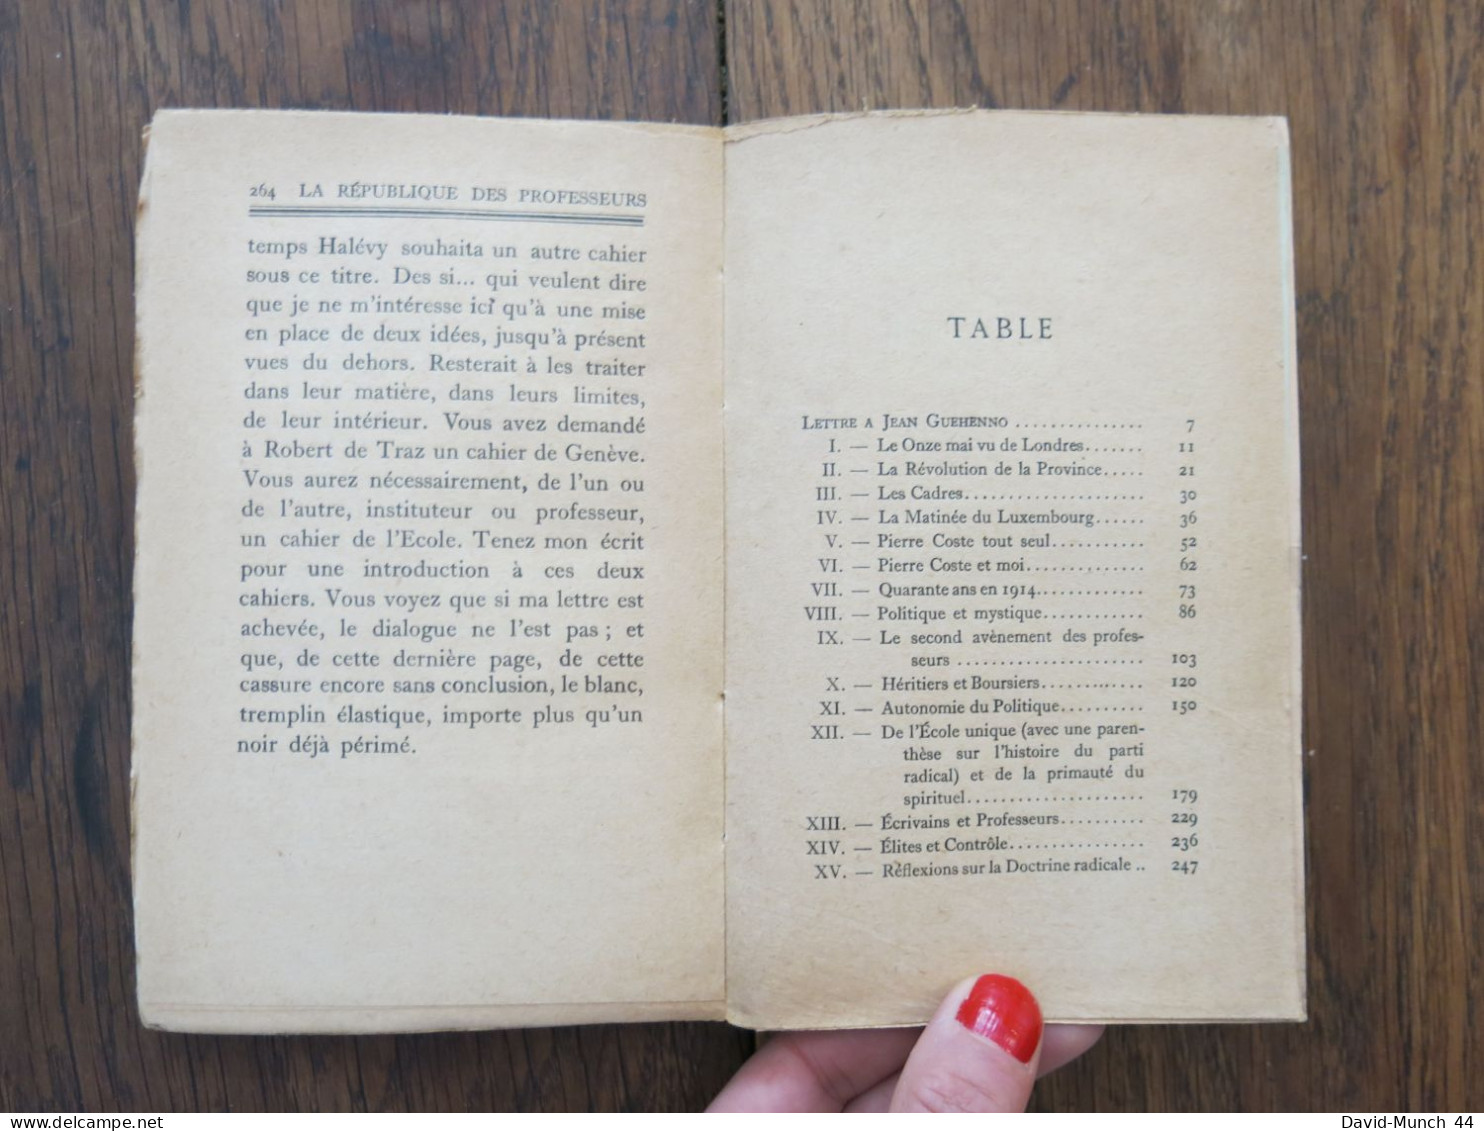 La République des Professeurs de Albert Thibaudet. "Les écrits", Grasset. 1927, Exemplaire Vélin Bouffant numéroté